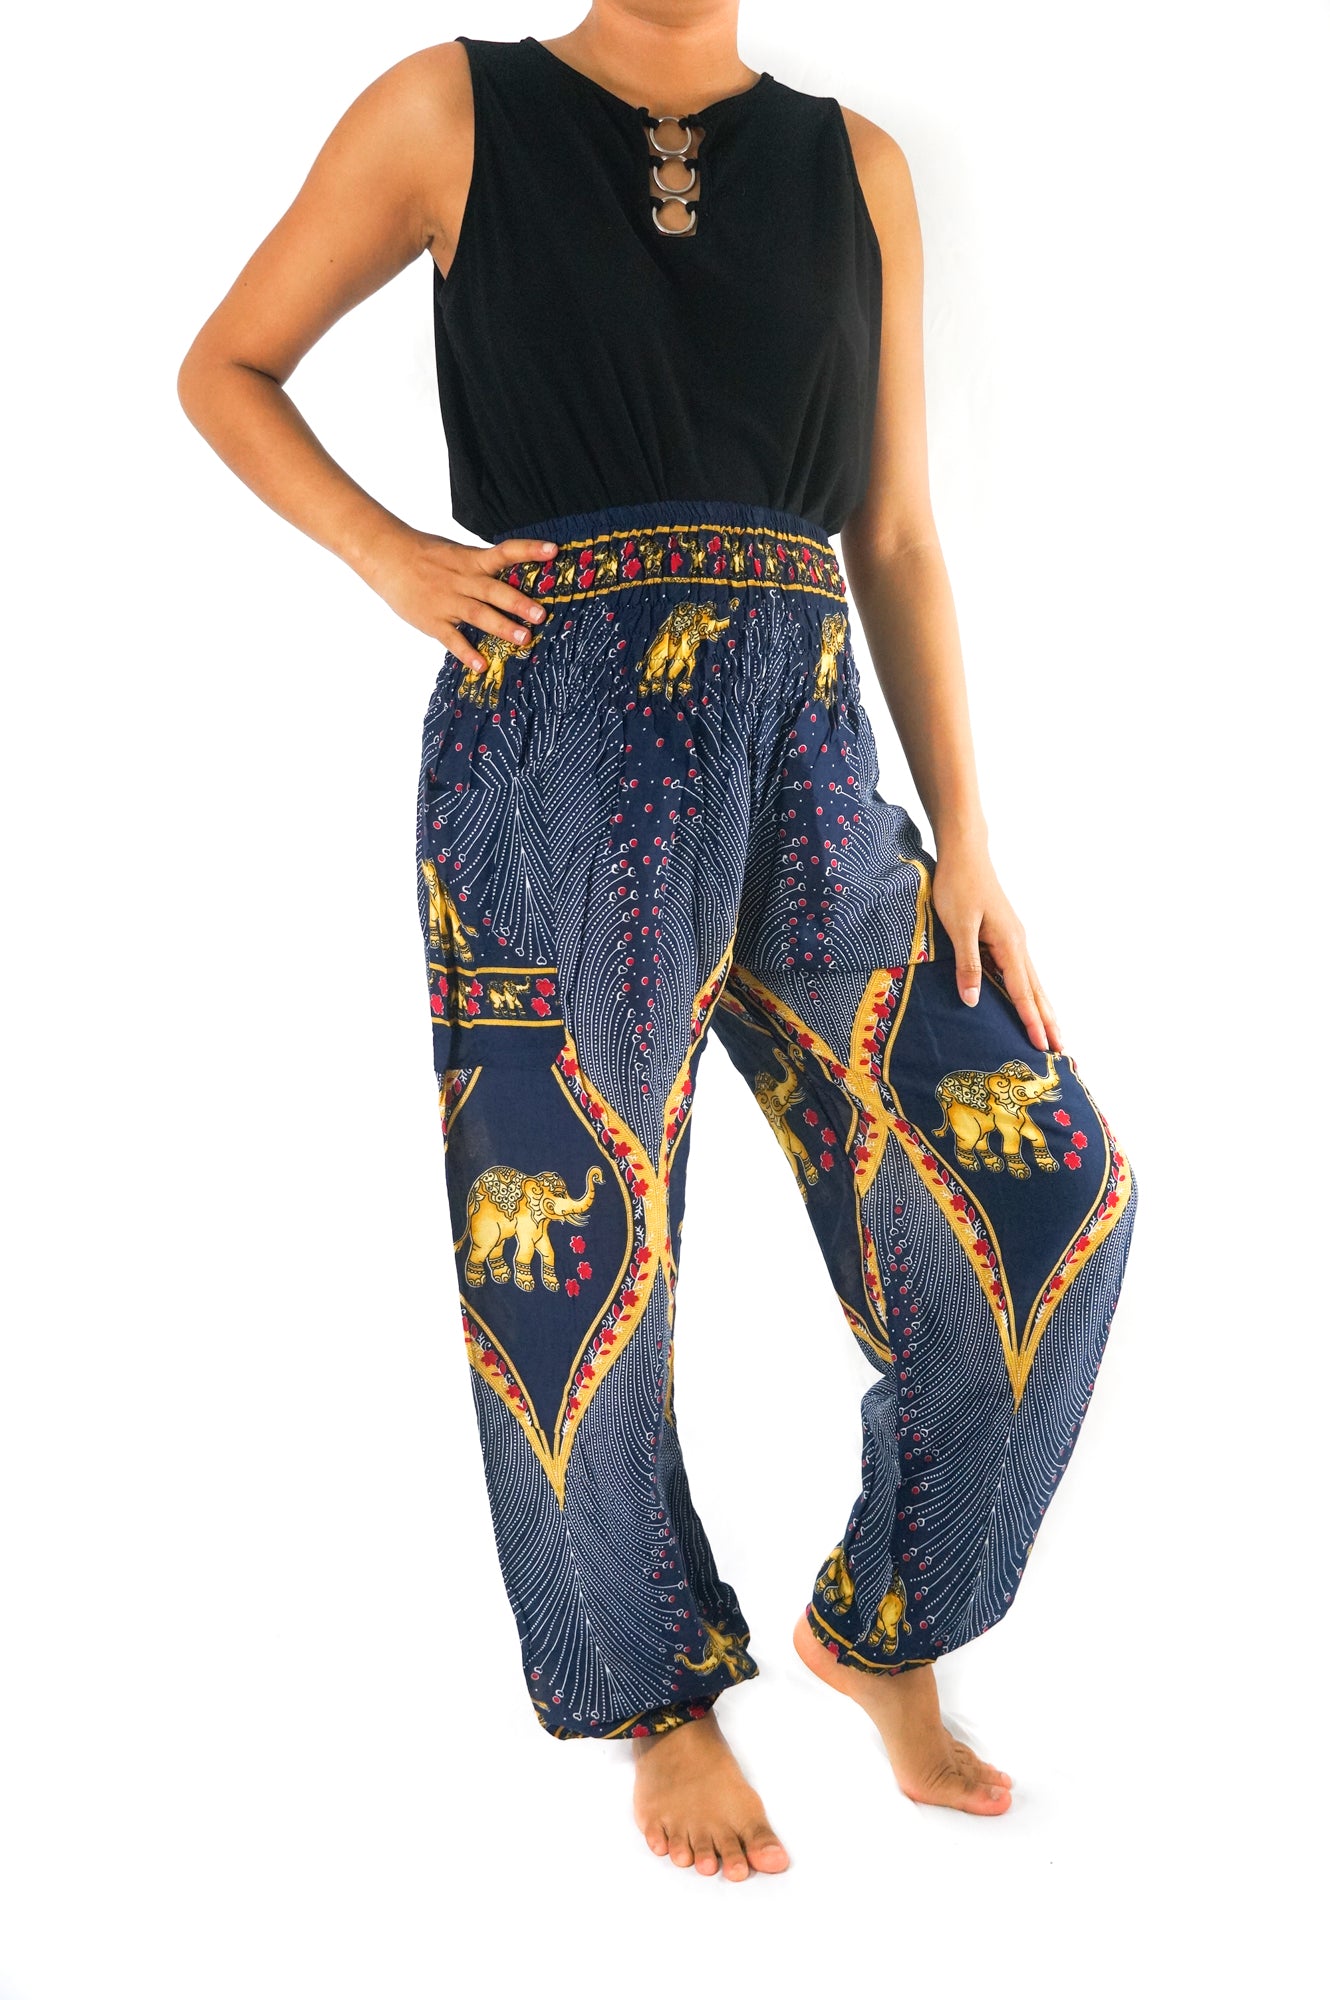 Handmade Unisex Harem Style, Hindu Elephant Print Yoga/Meditation Pant